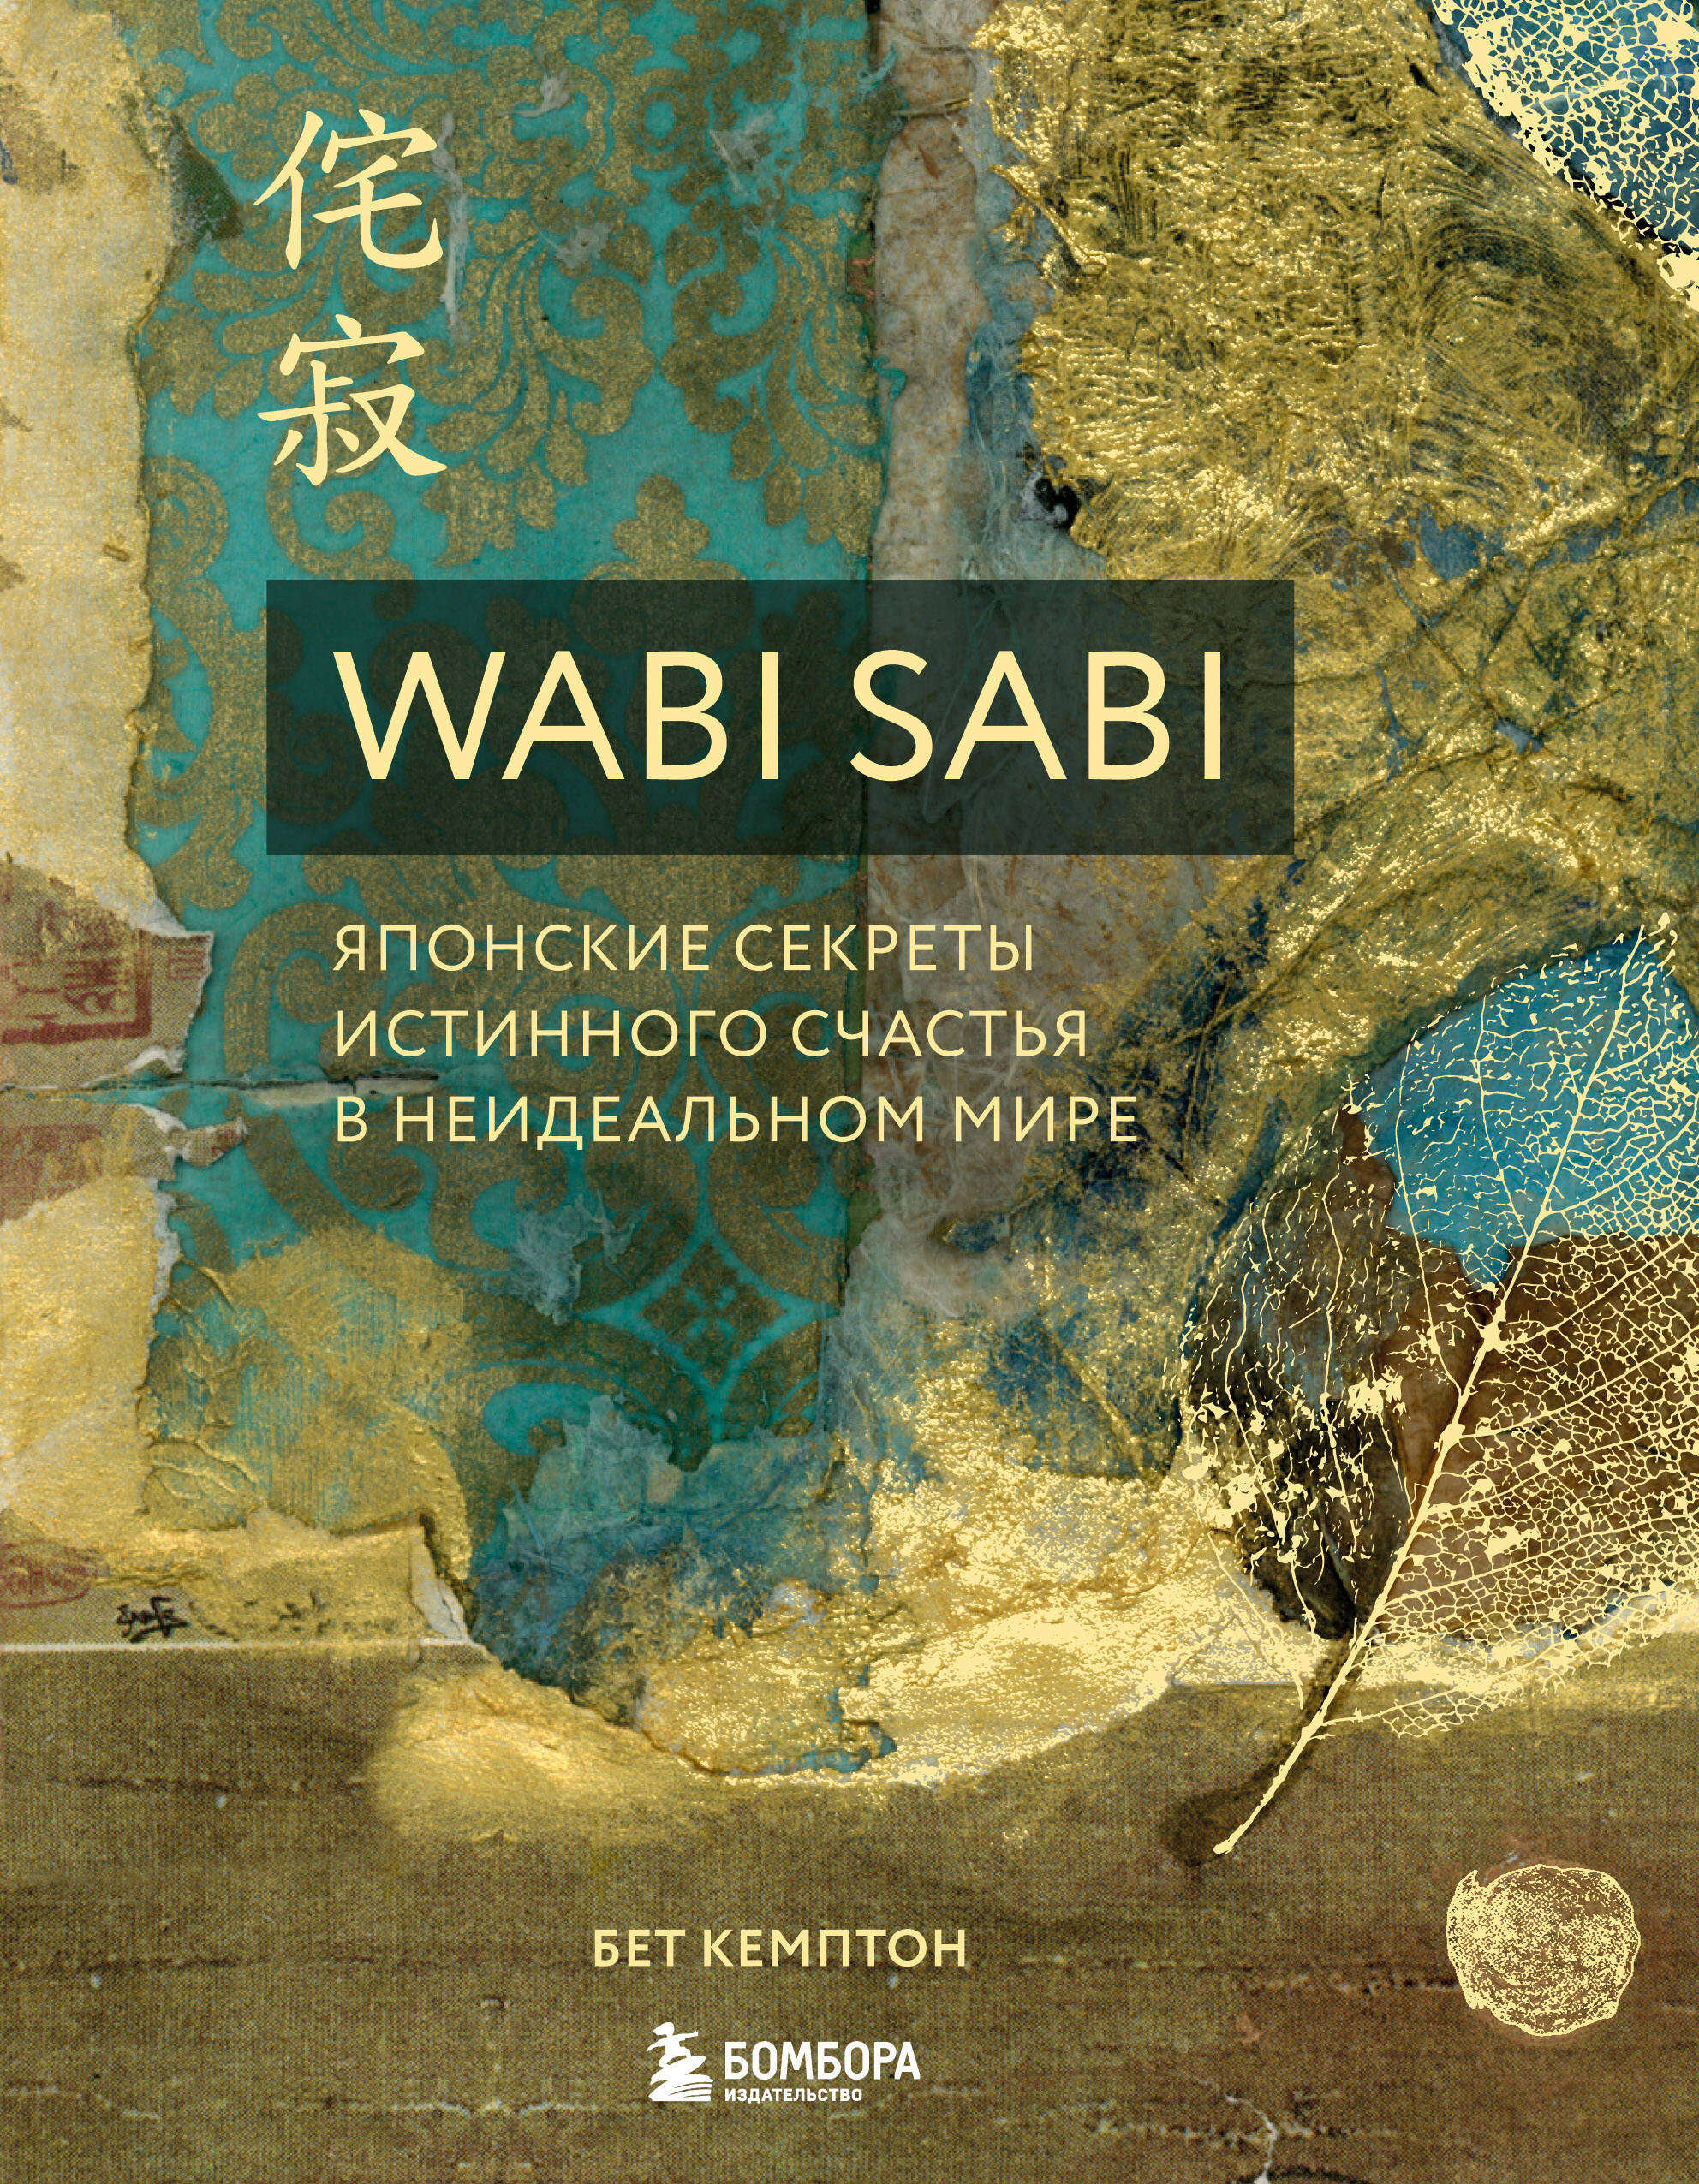 Кемптон Бет - Wabi Sabi. Японские секреты истинного счастья в неидеальном мире